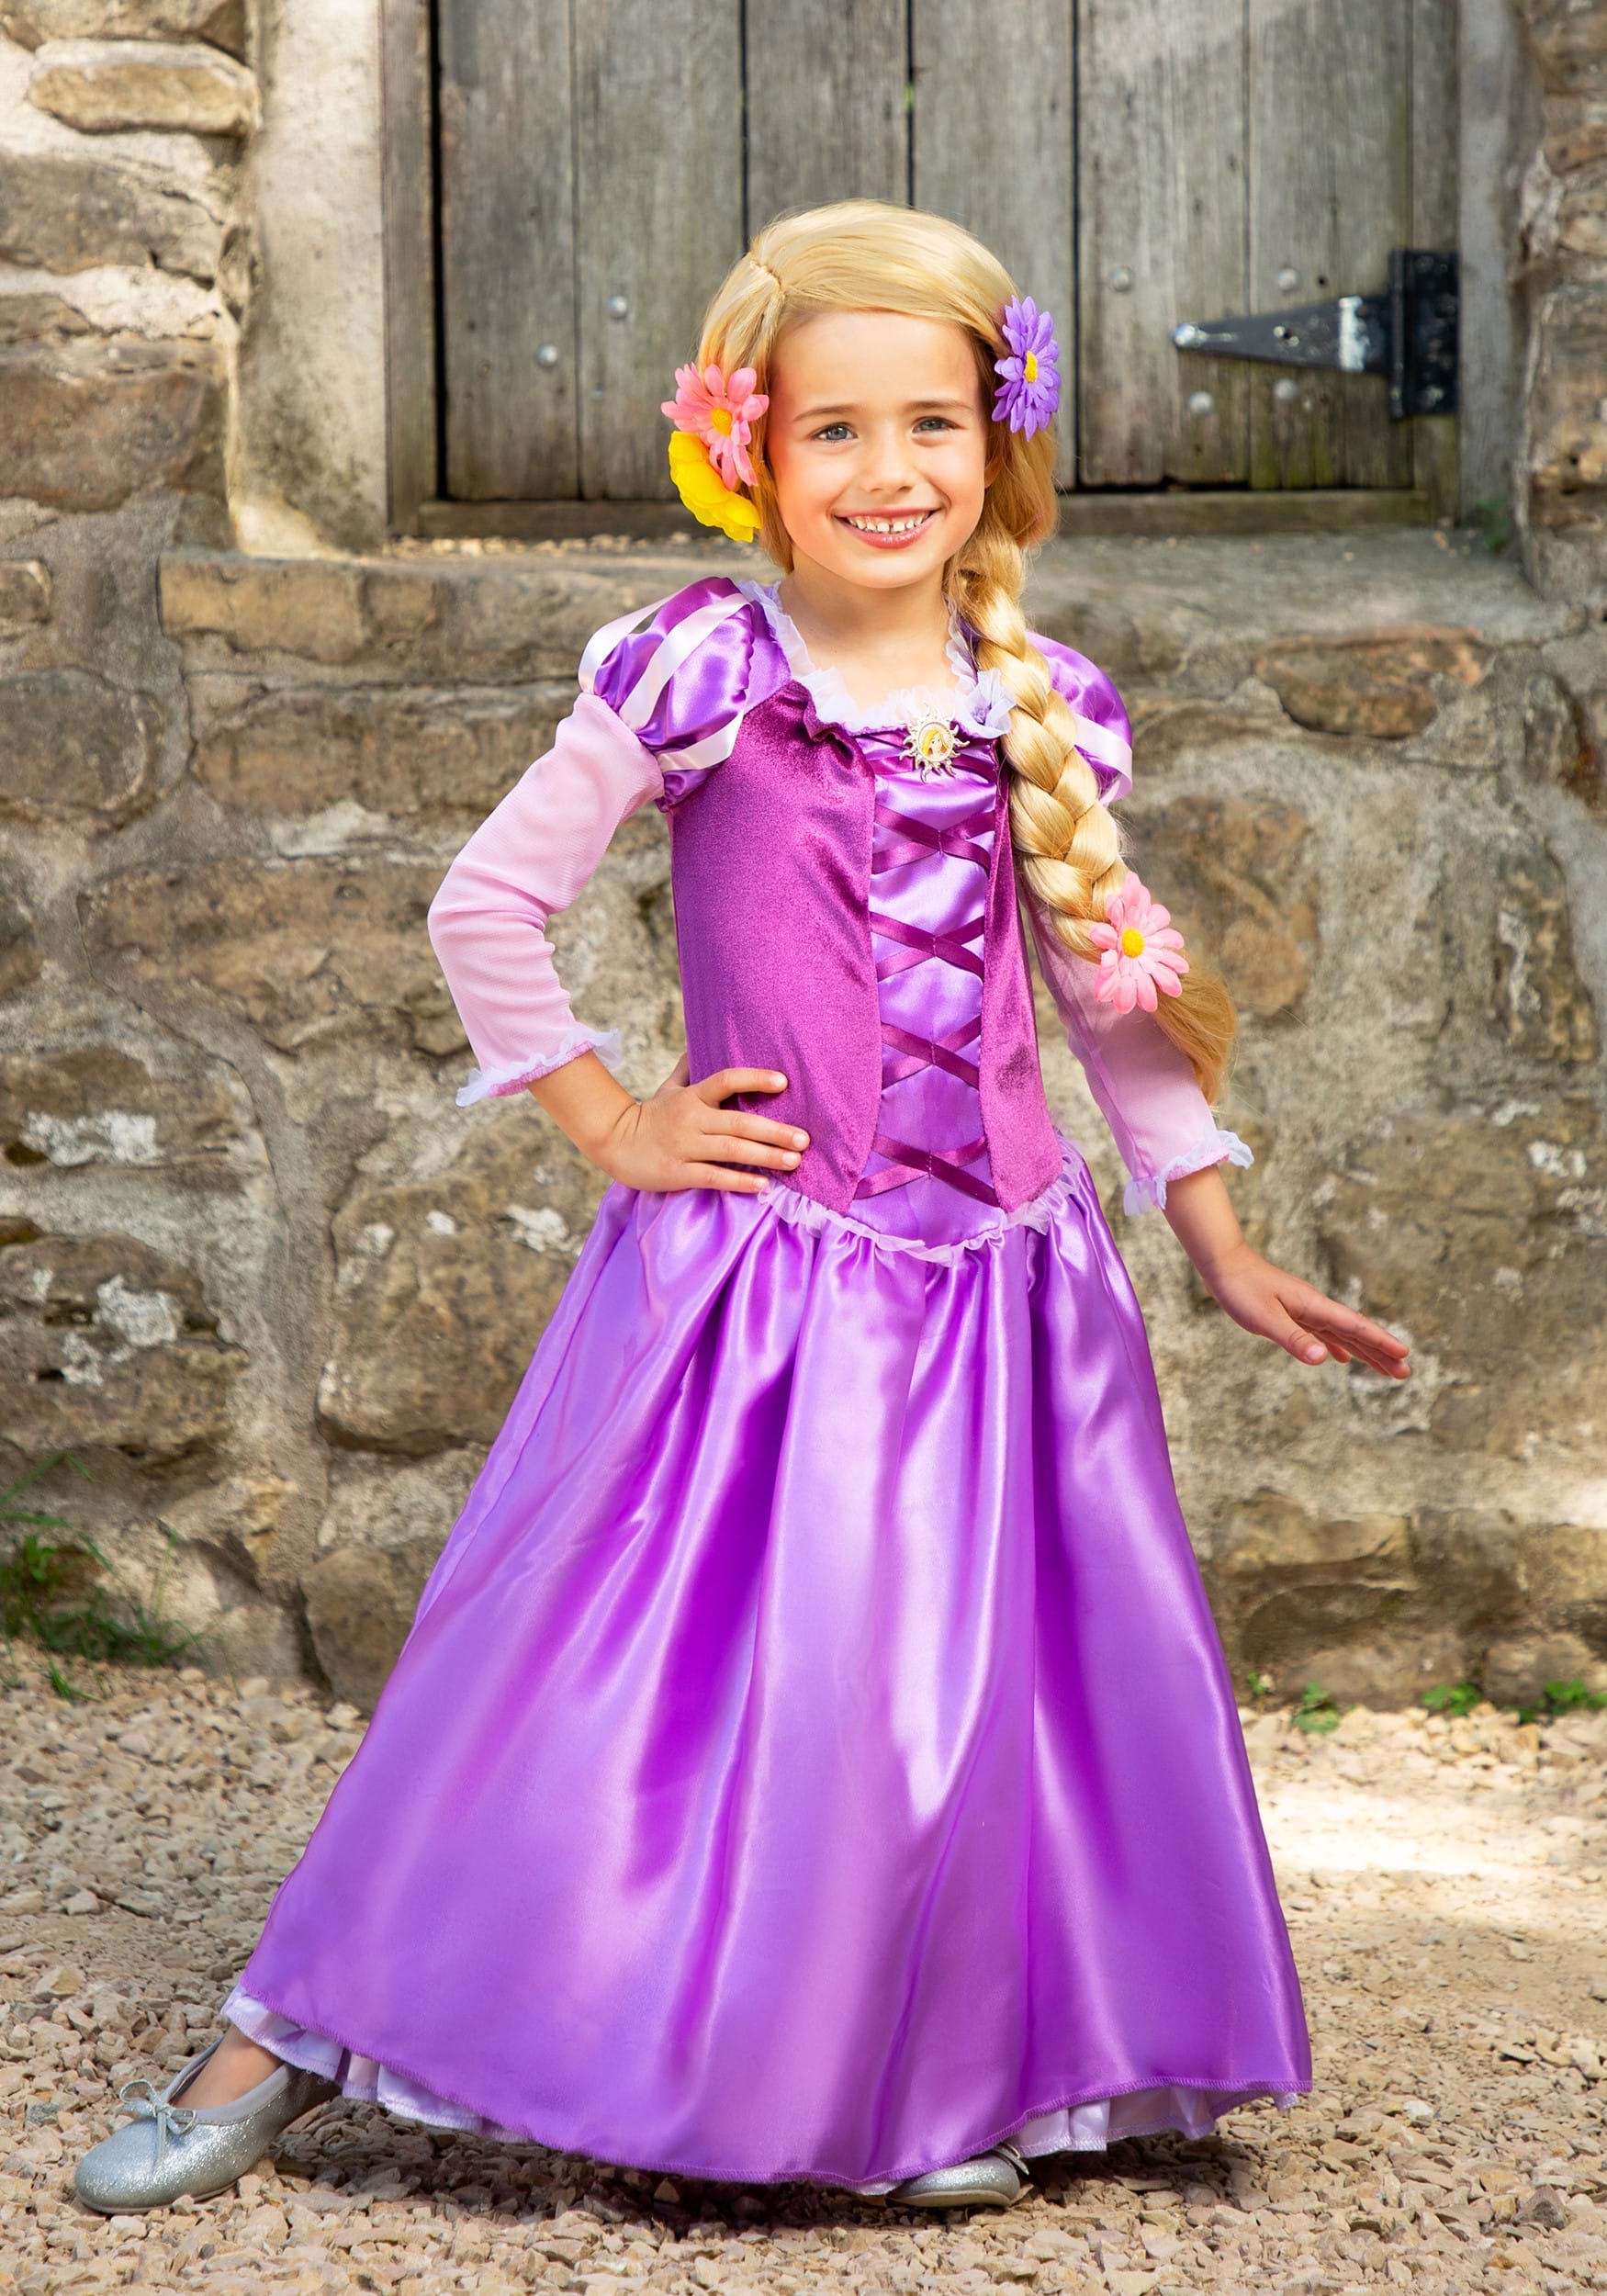 Melbourne Recitar marido Disfraz clásico de Rapunzel para niña